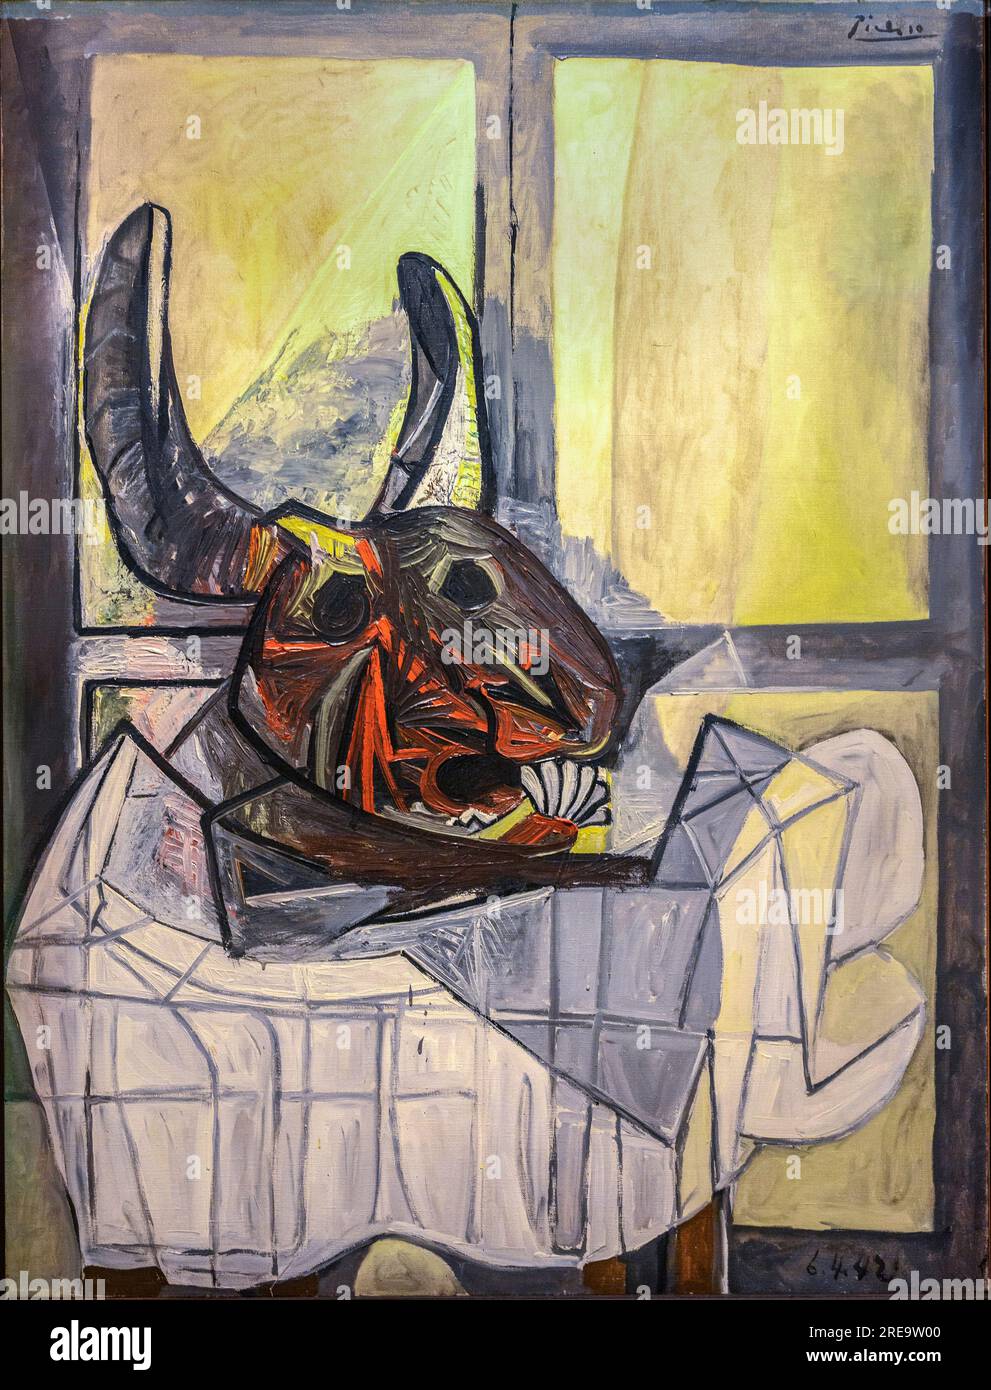 Tête de taureau. Peinture de l'artiste espagnol Pablo Picasso, 1942. Huile sur toile. Banque D'Images